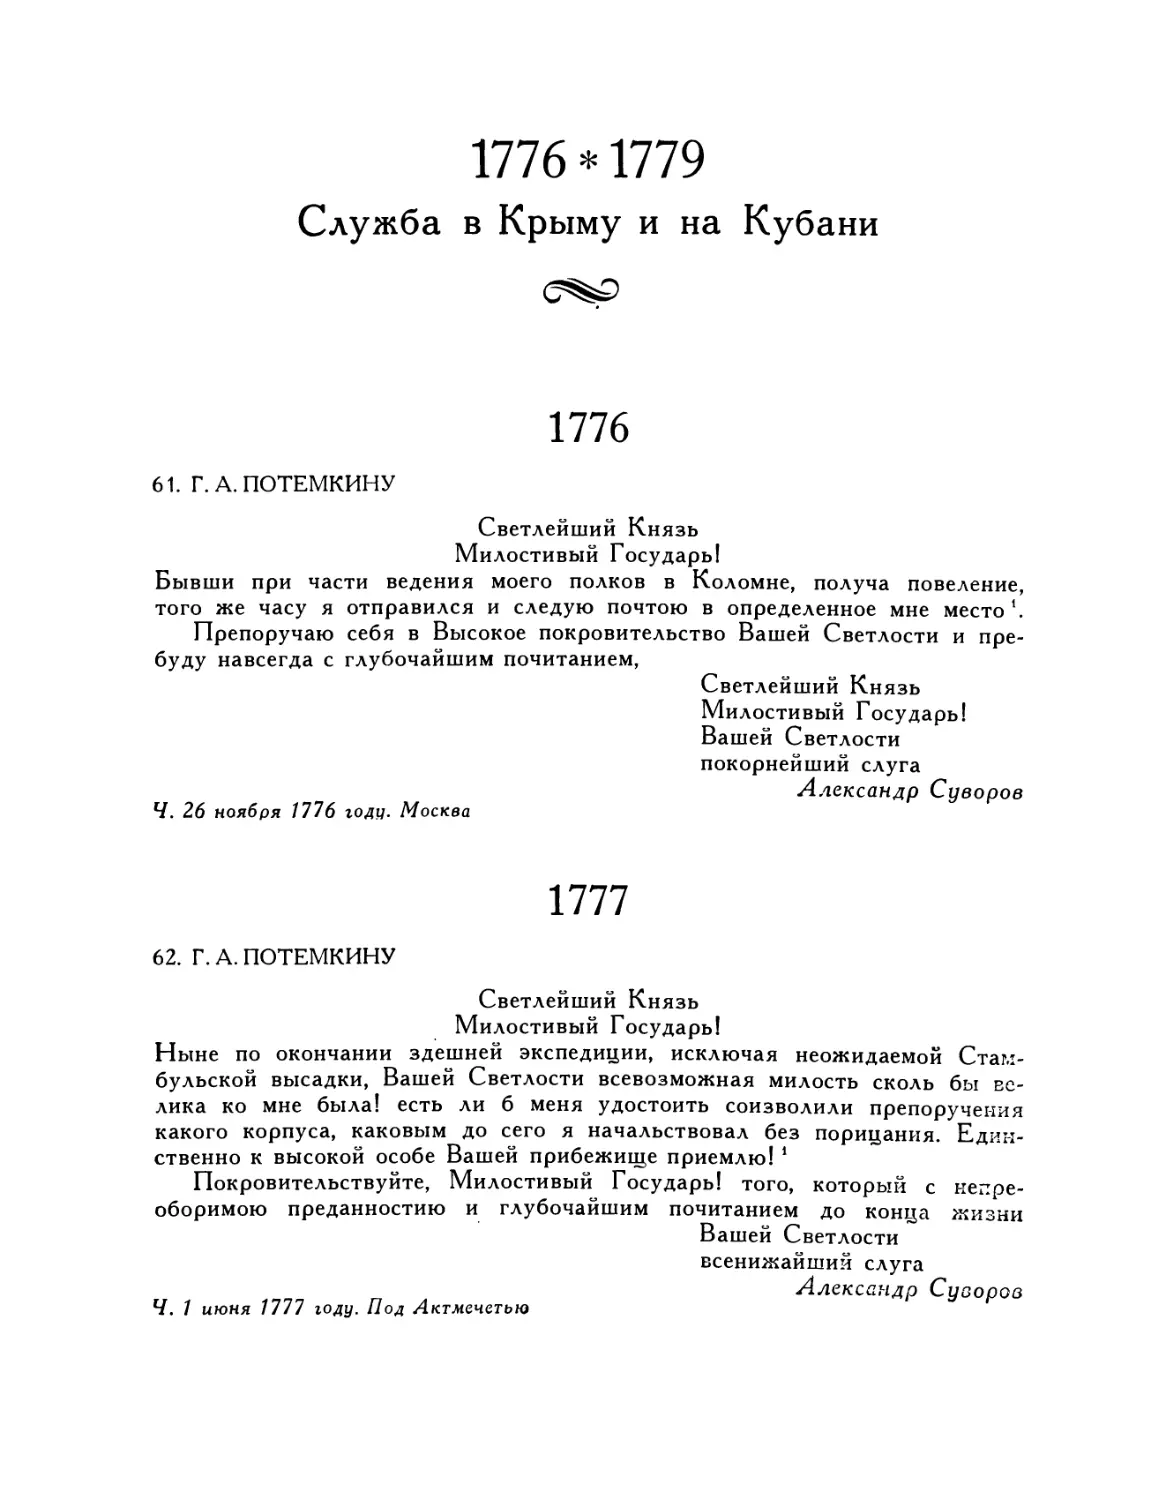 1776—1779 Служба в Крыму и на Кубани
62. Г. А. Потемкину. 1.VI.1777